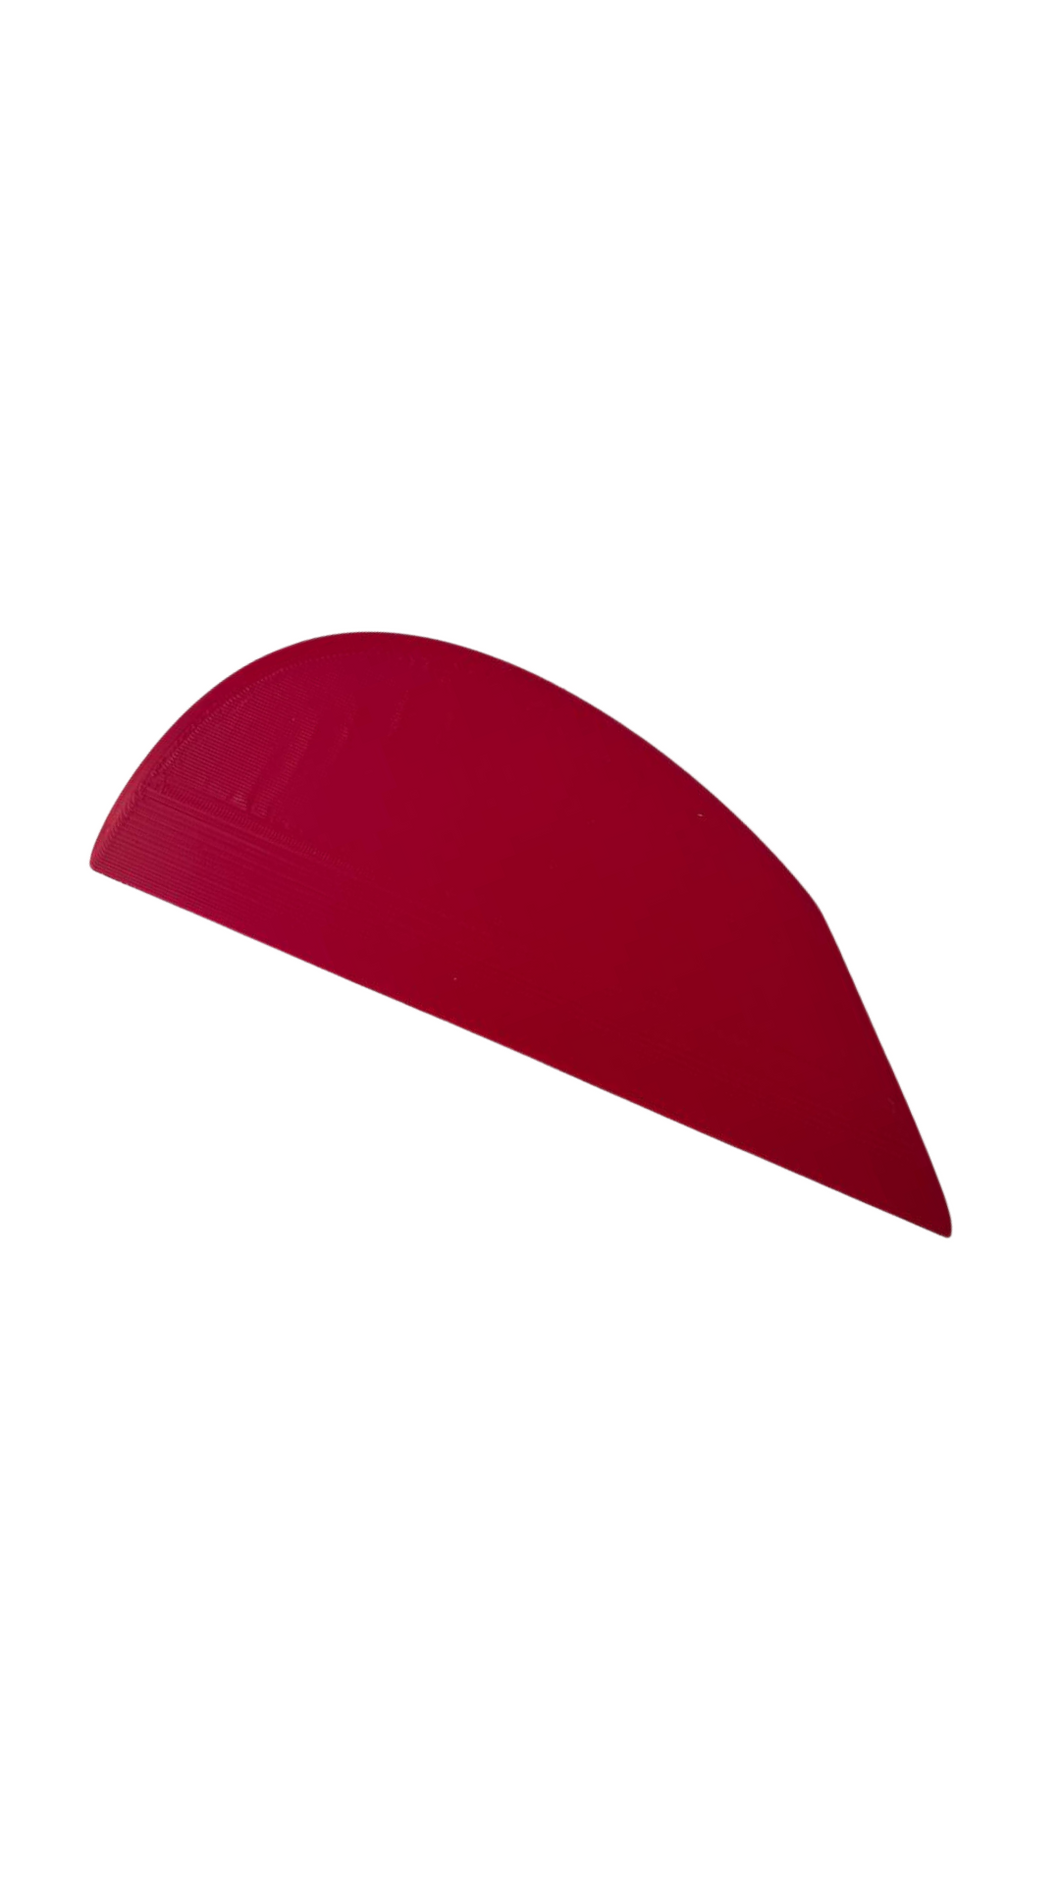 Plastic Scraper - Big Red